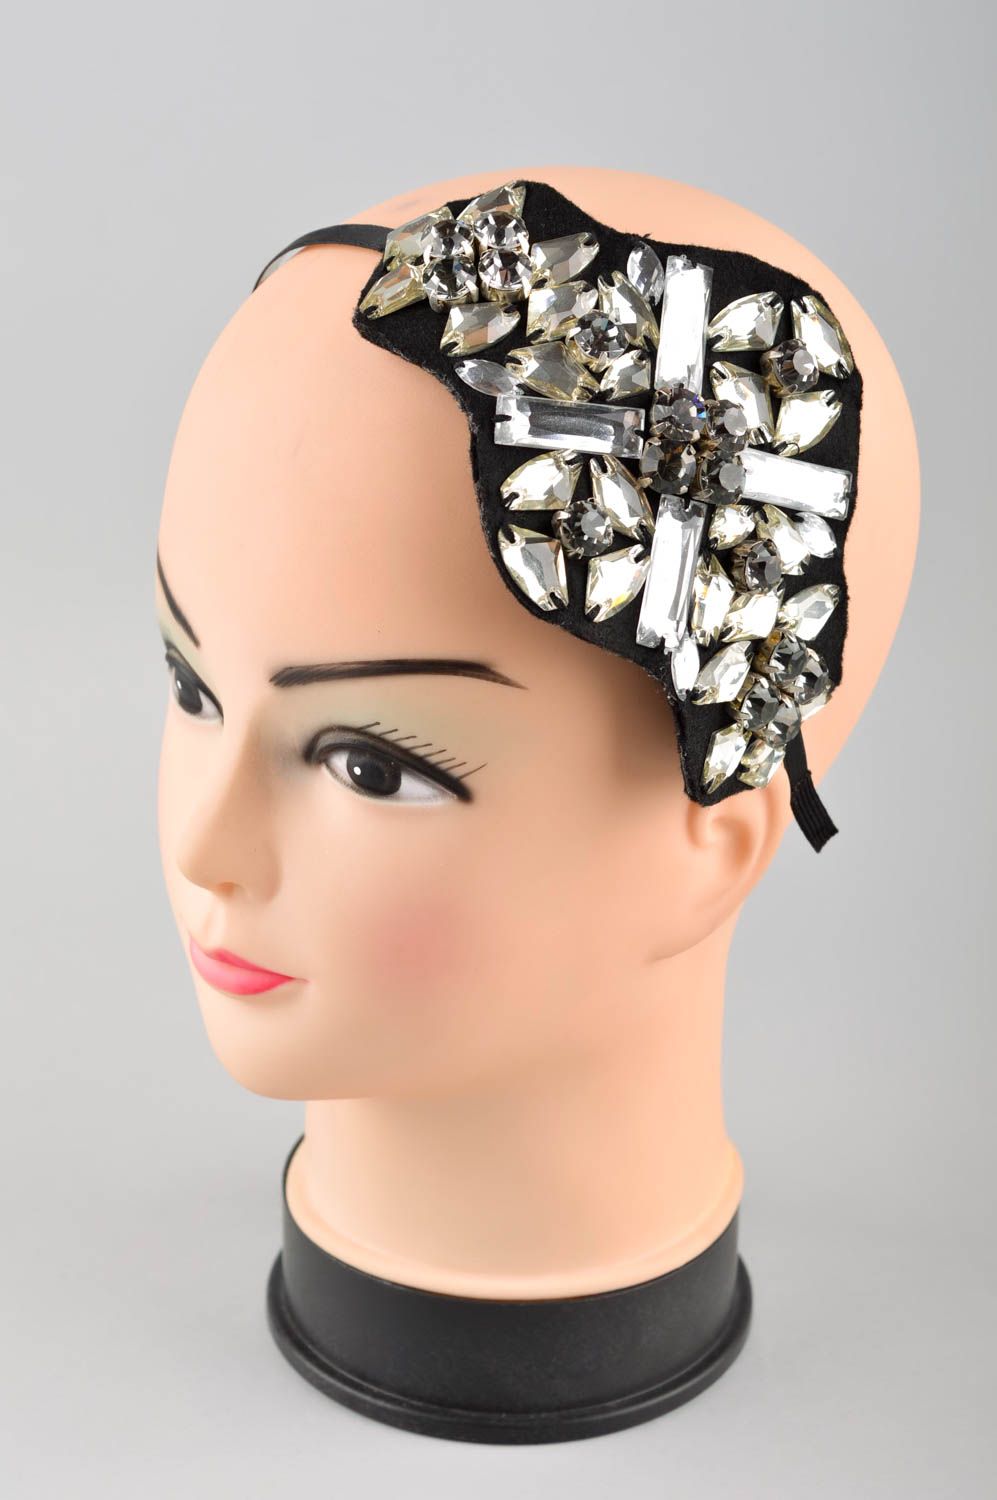 Vincha artesanal de metal con bordado adorno para el cabello regalo para chicas foto 1